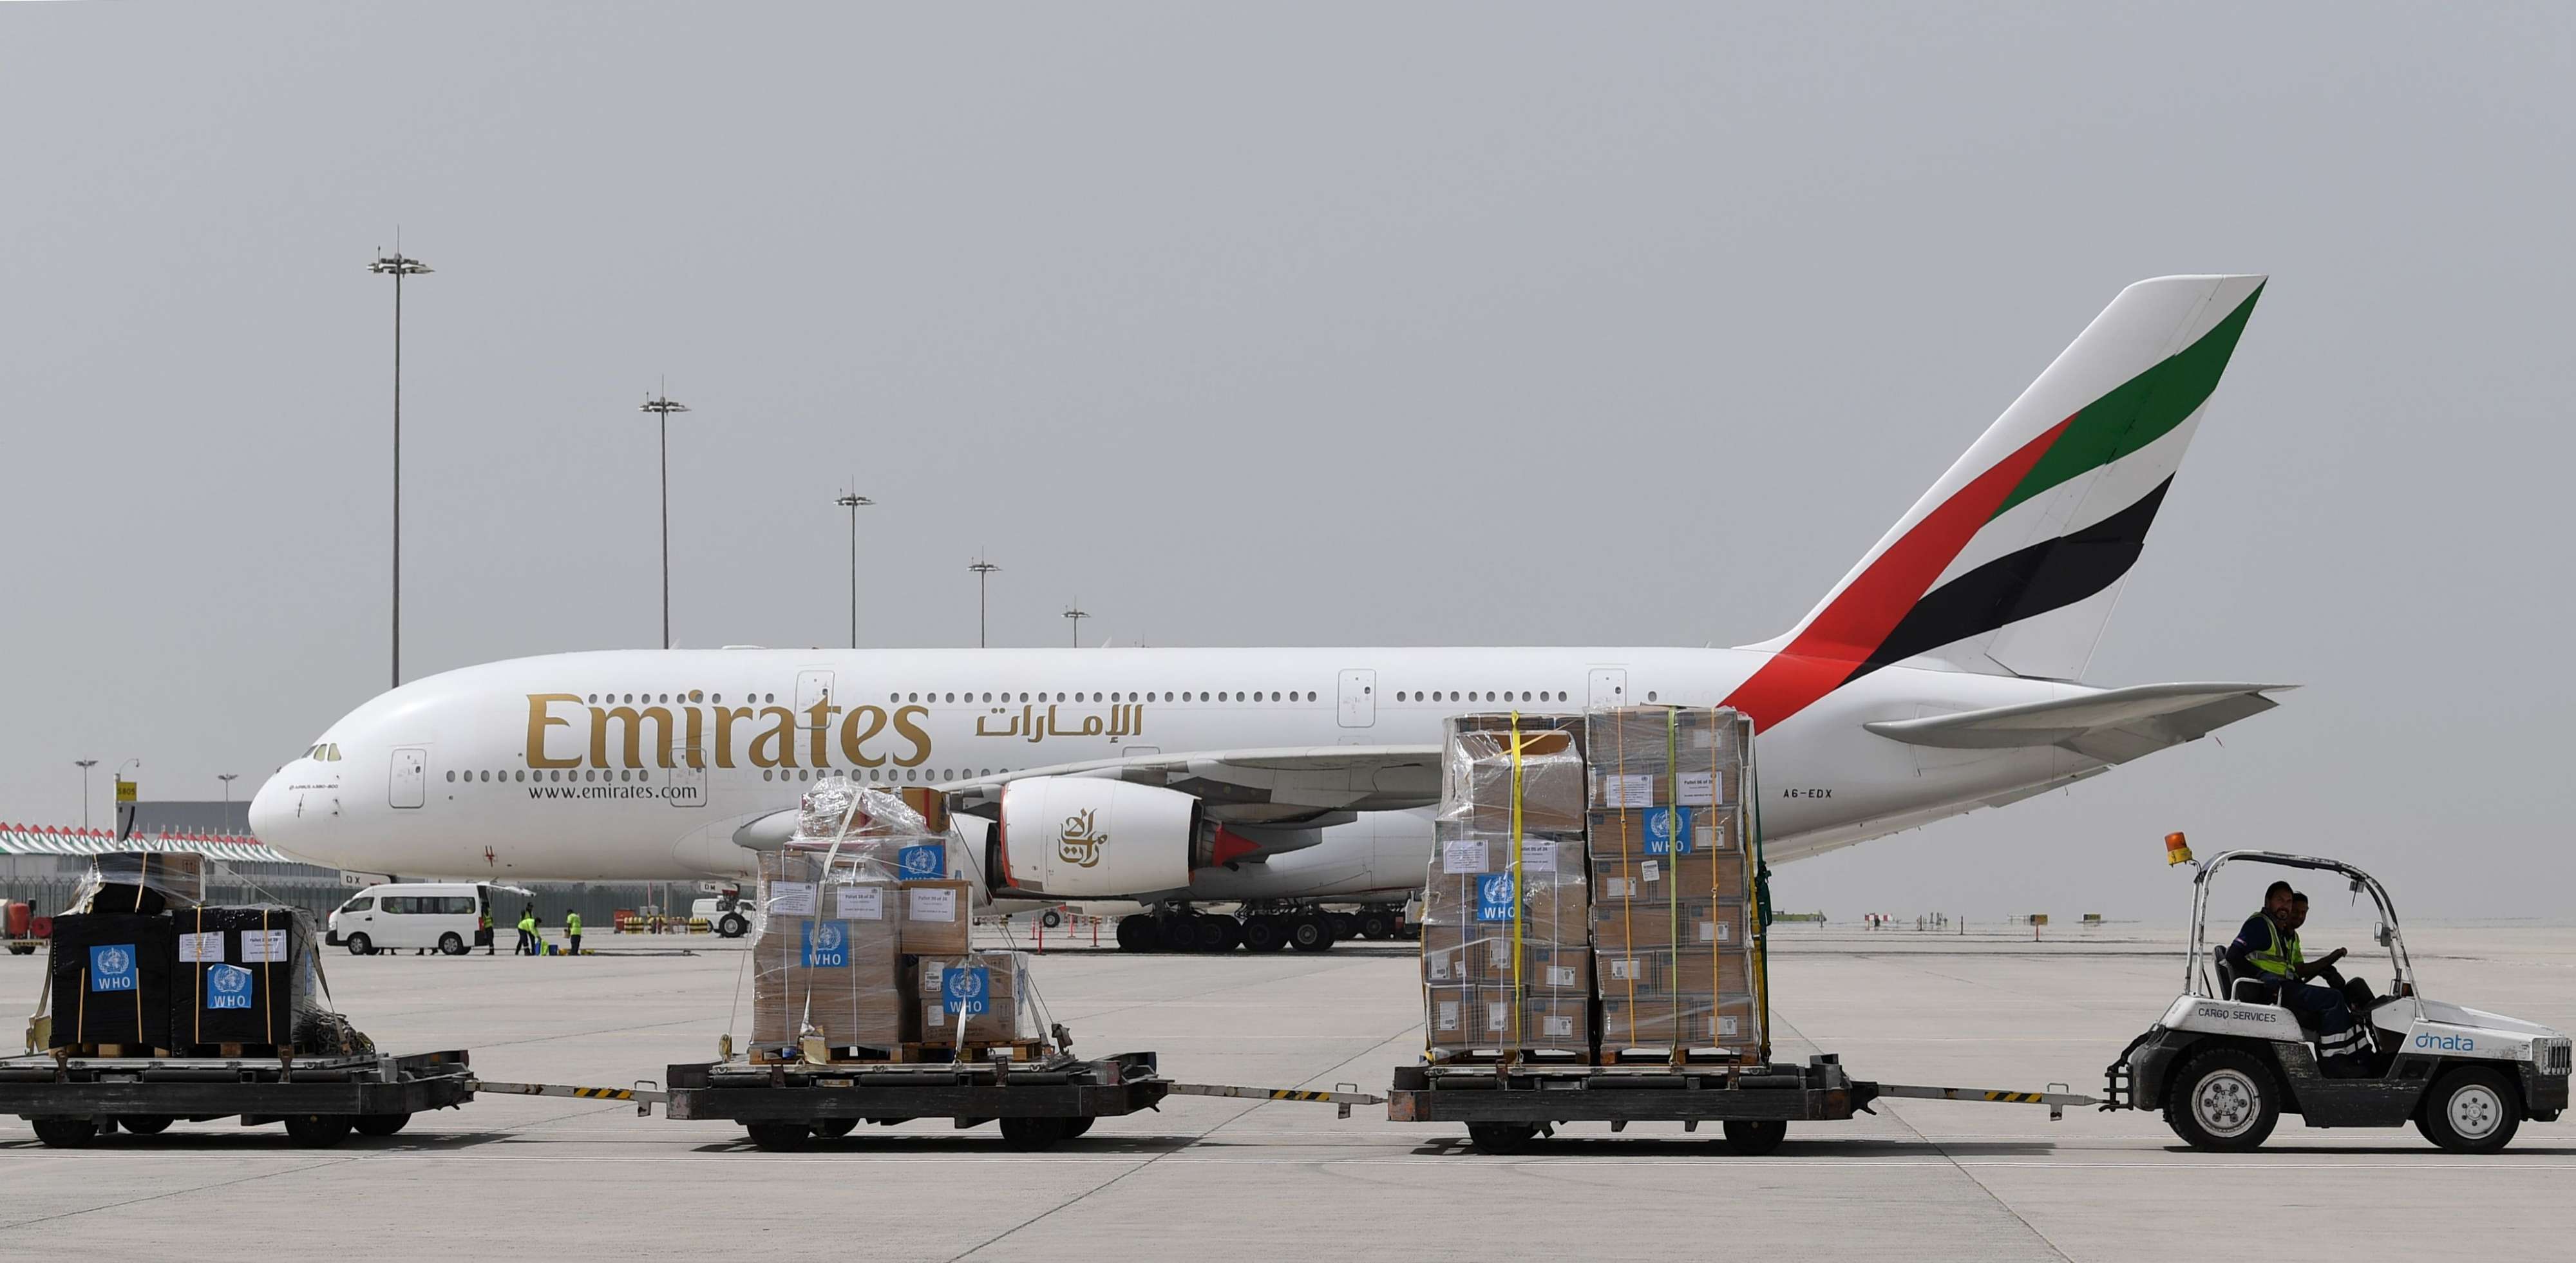 طيران الإمارات نقلت عشرات الأطنان من المساعدات الطبية لاكثر من وجهة عالمية ضمن جهود مكافحة كورونا